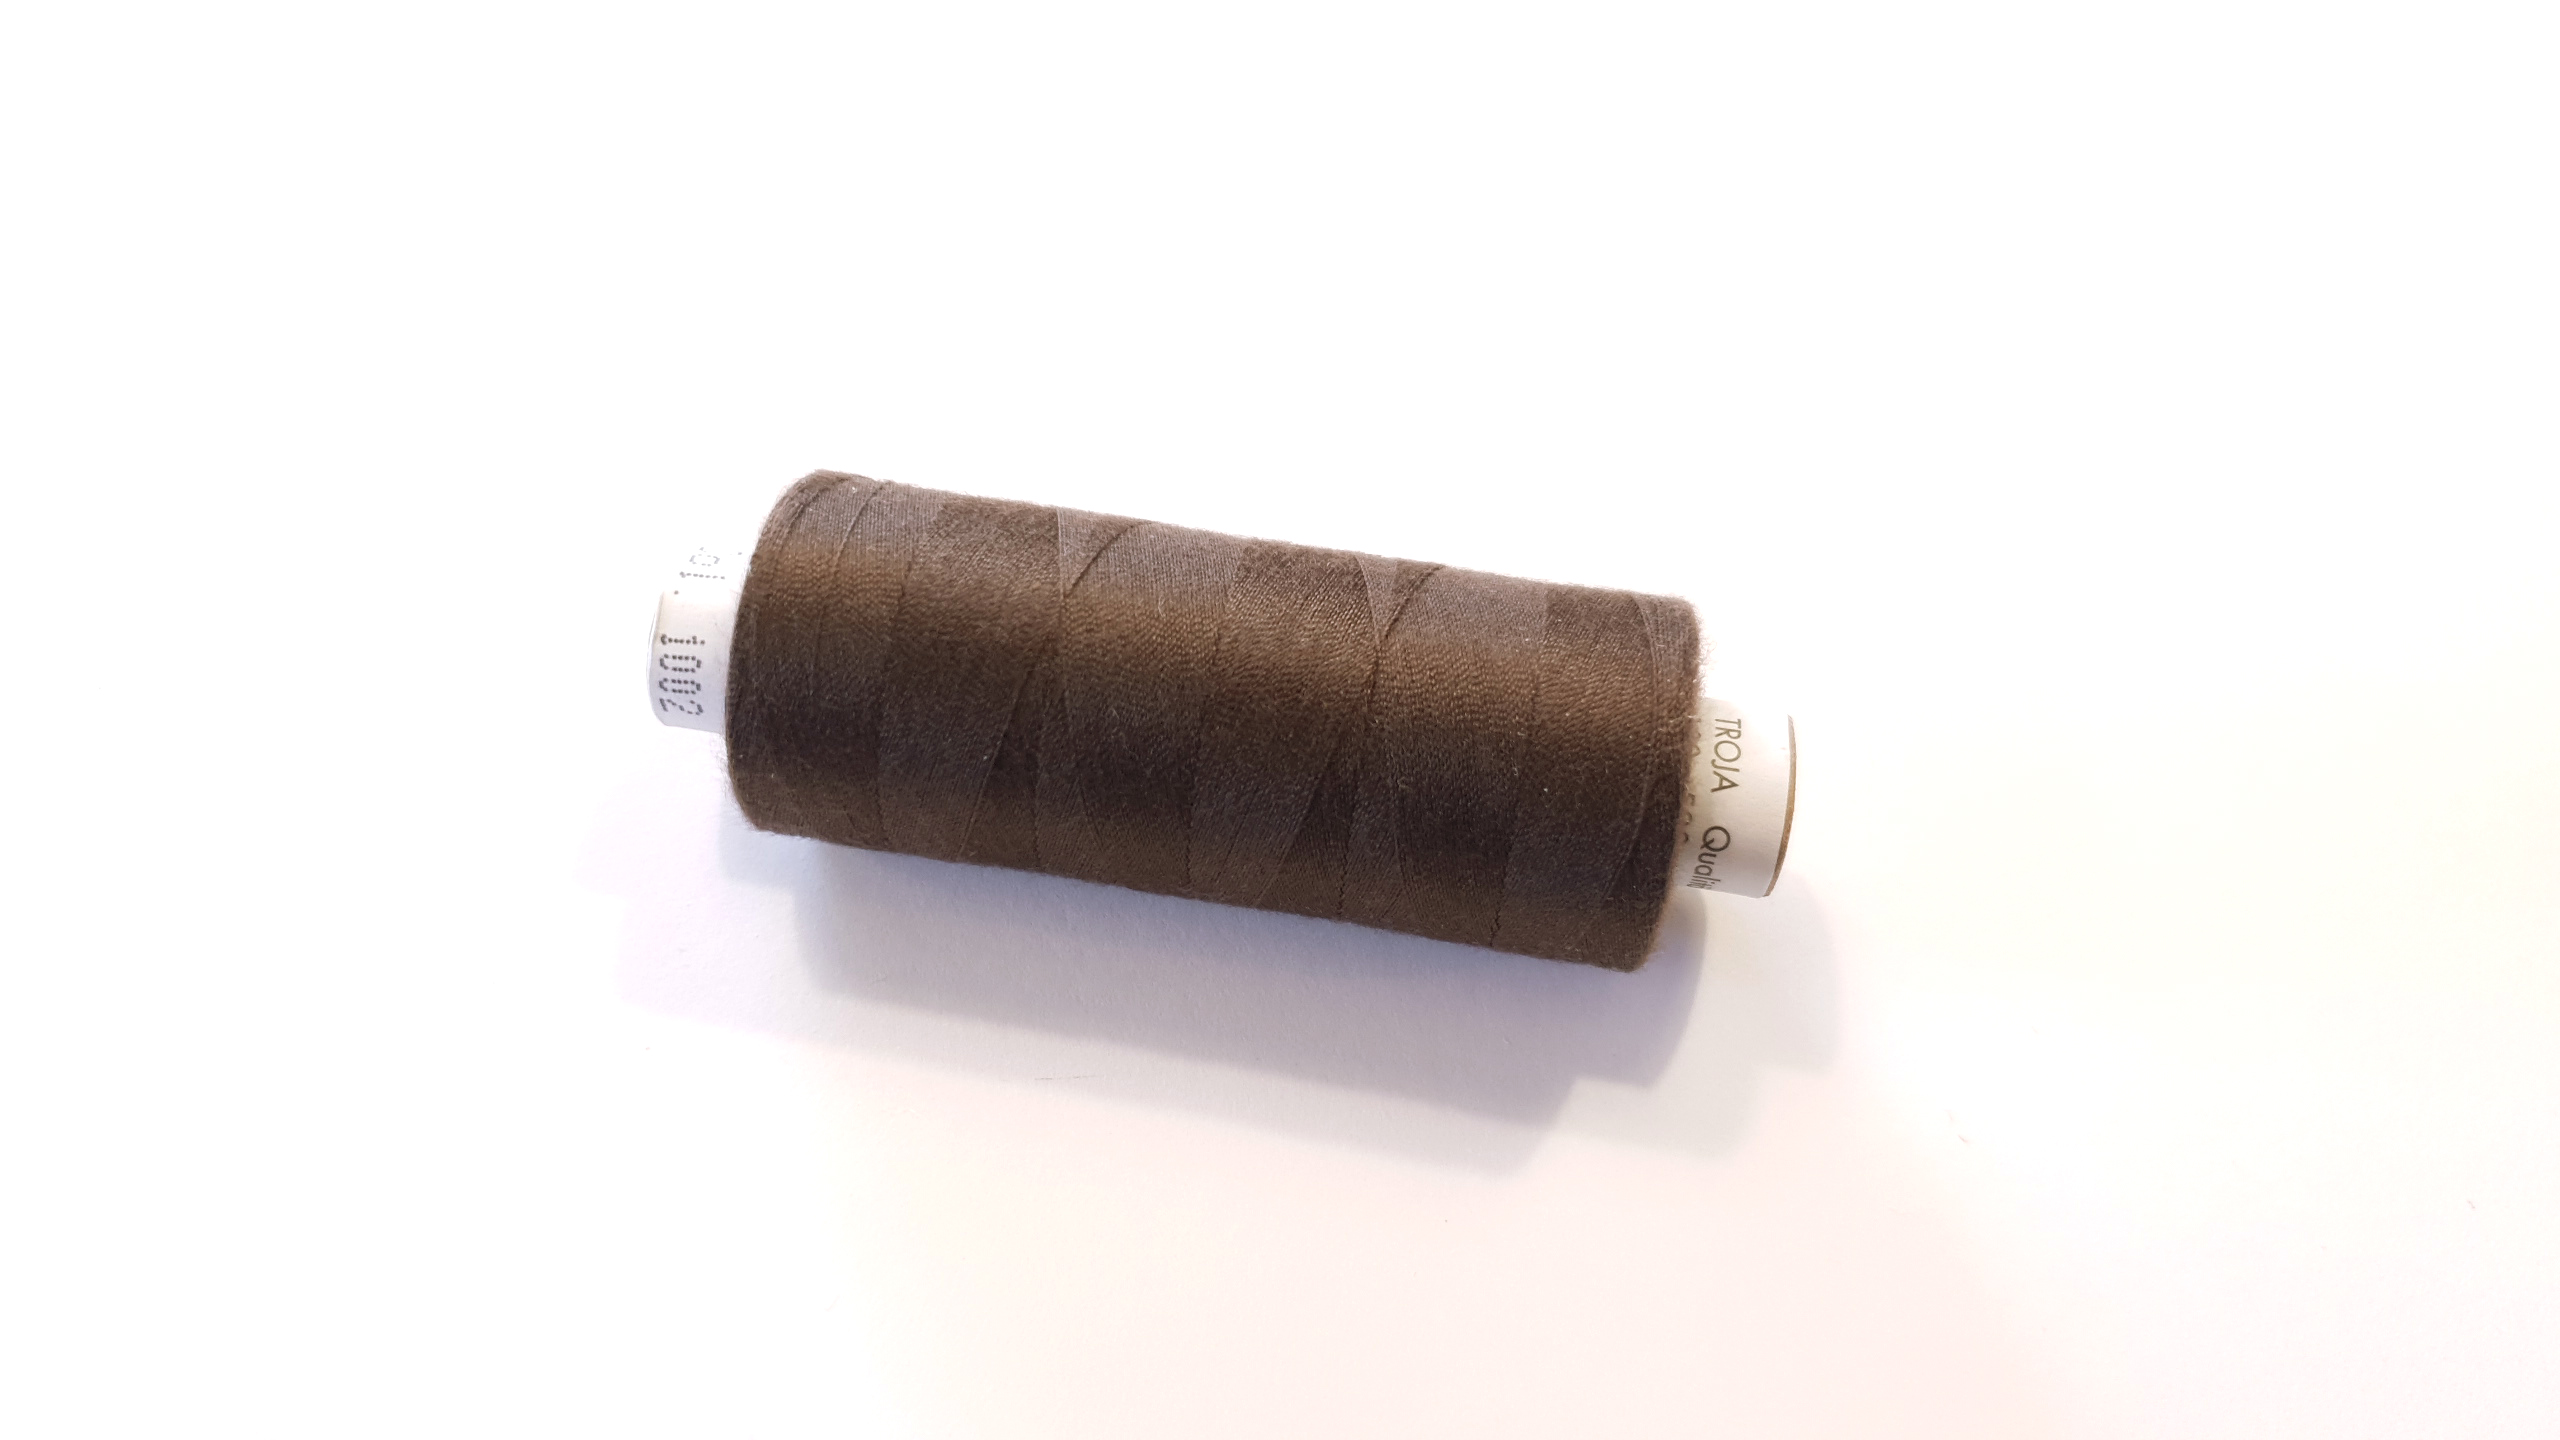 Sewing thread 500m- dark brown 1002